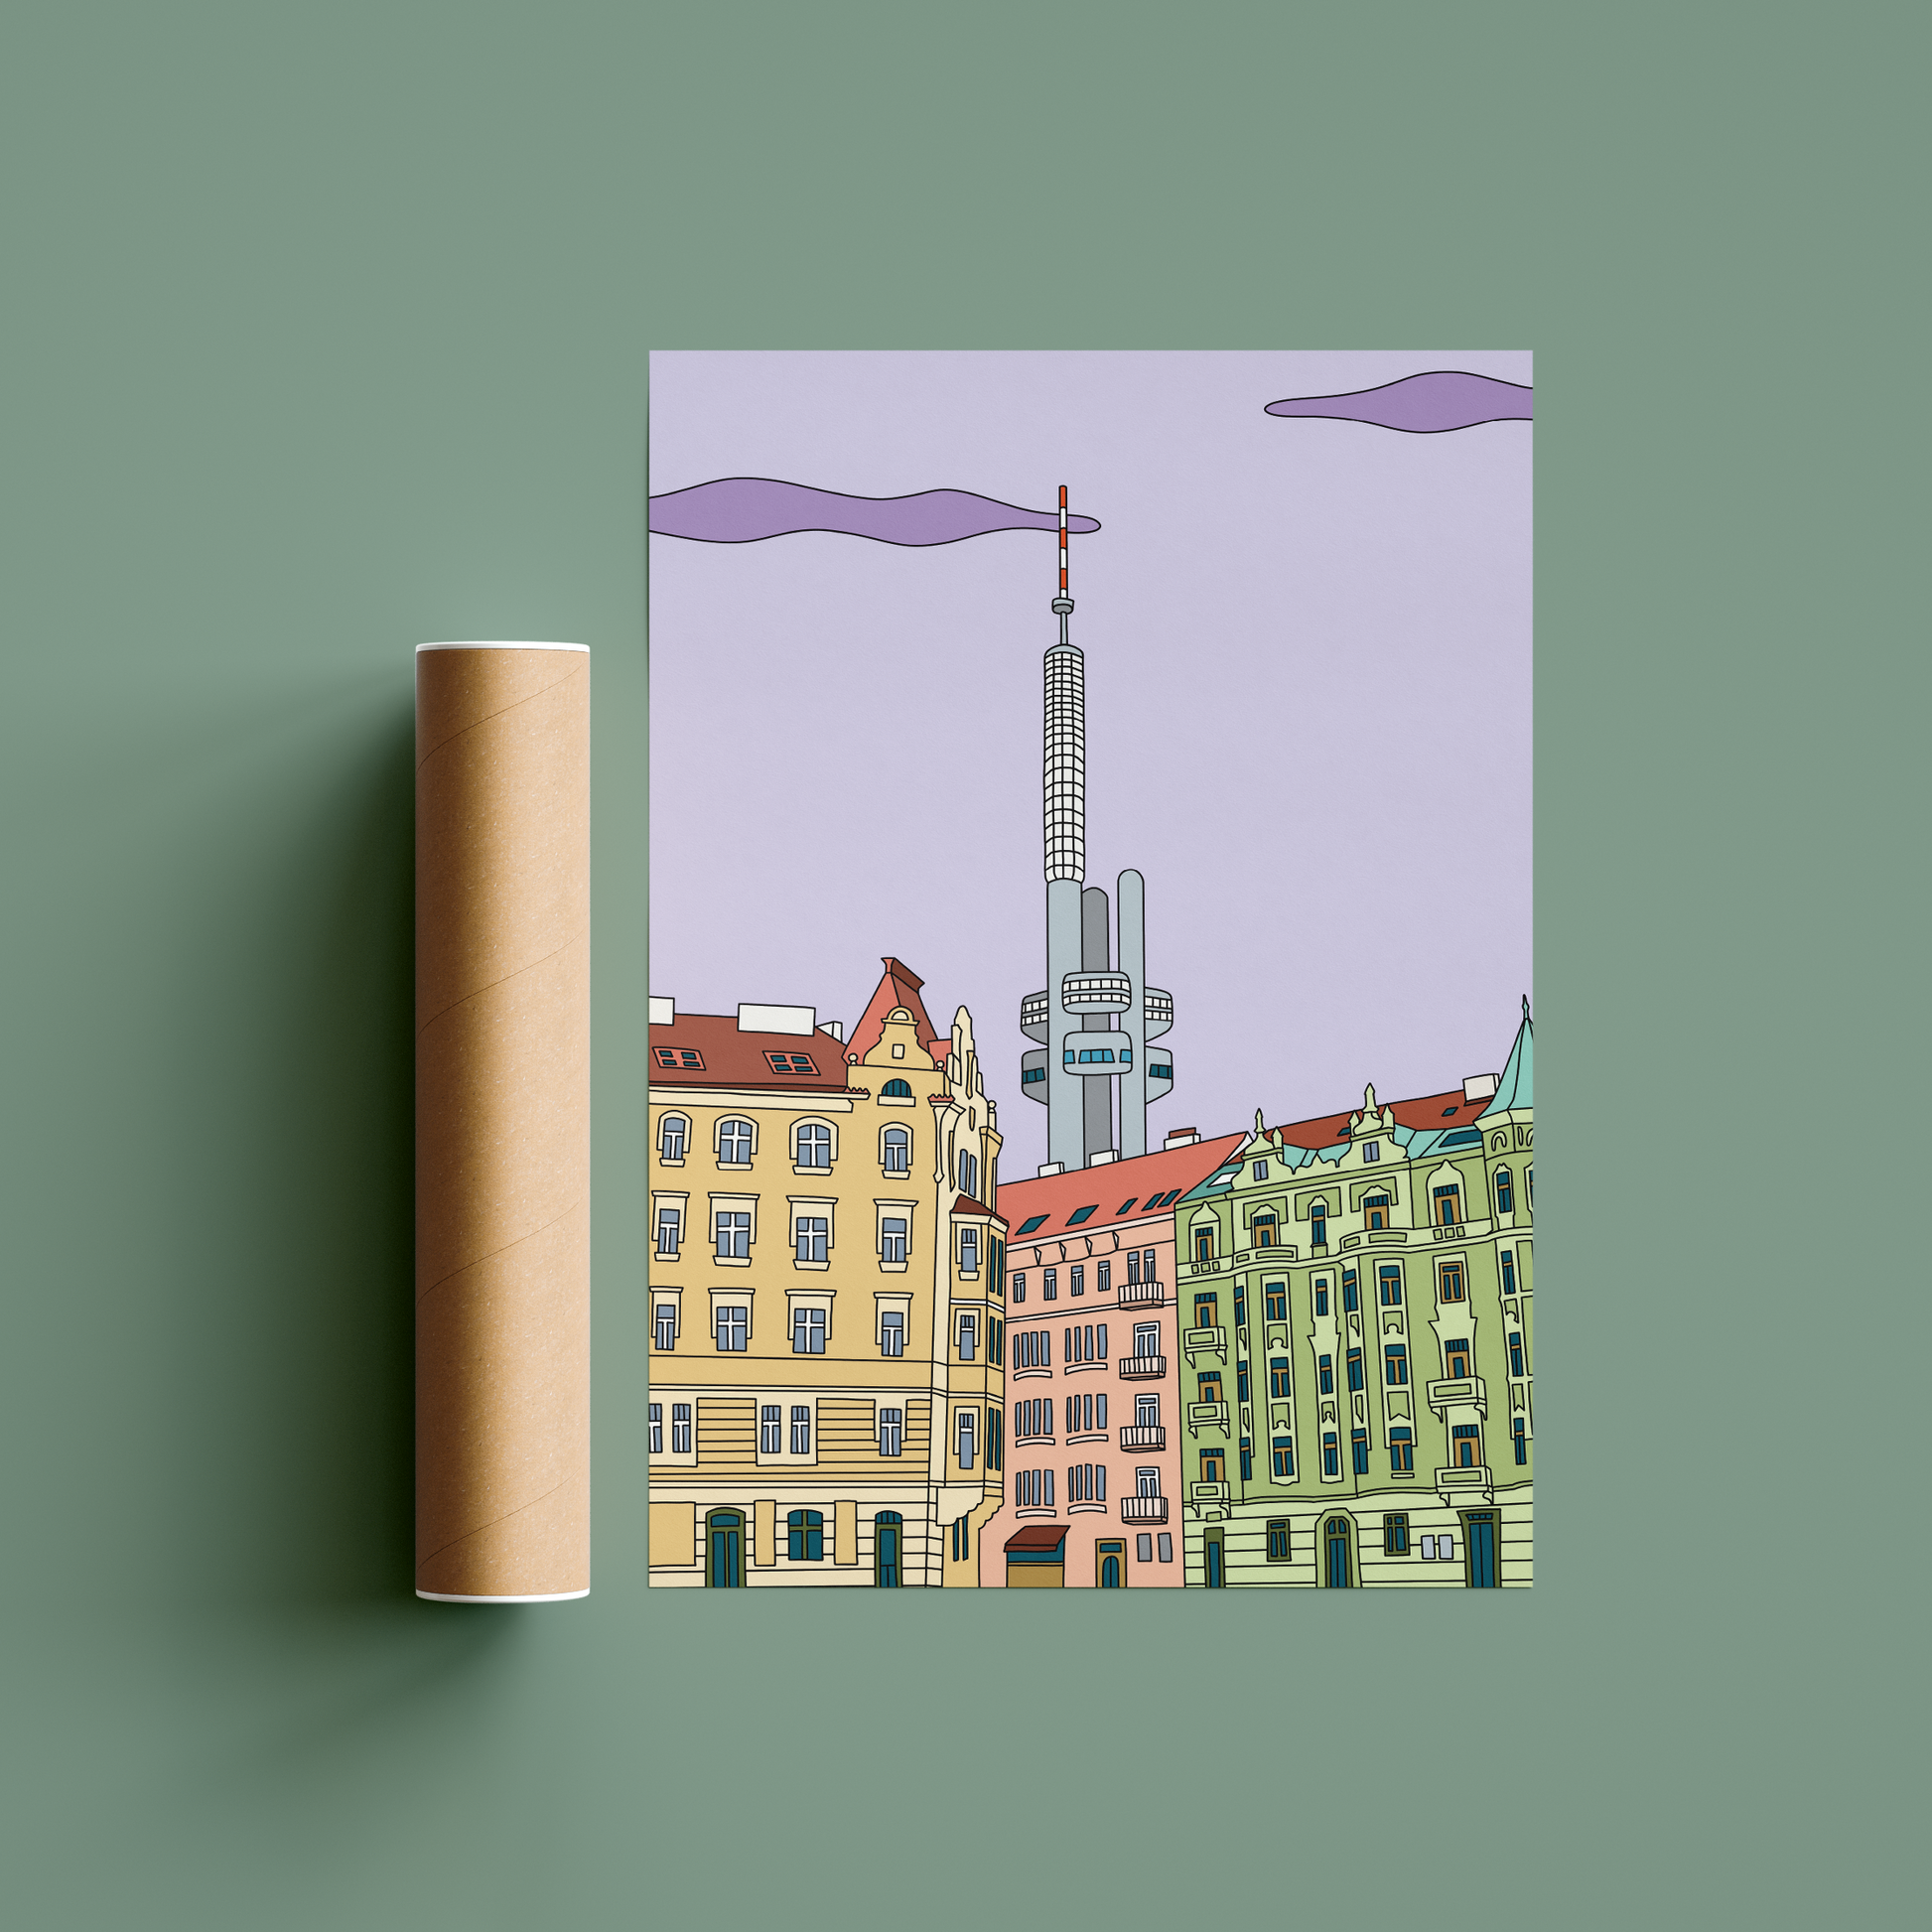 Originální barevný plakát Prague Collection s ilustrací Žižkovské věže.